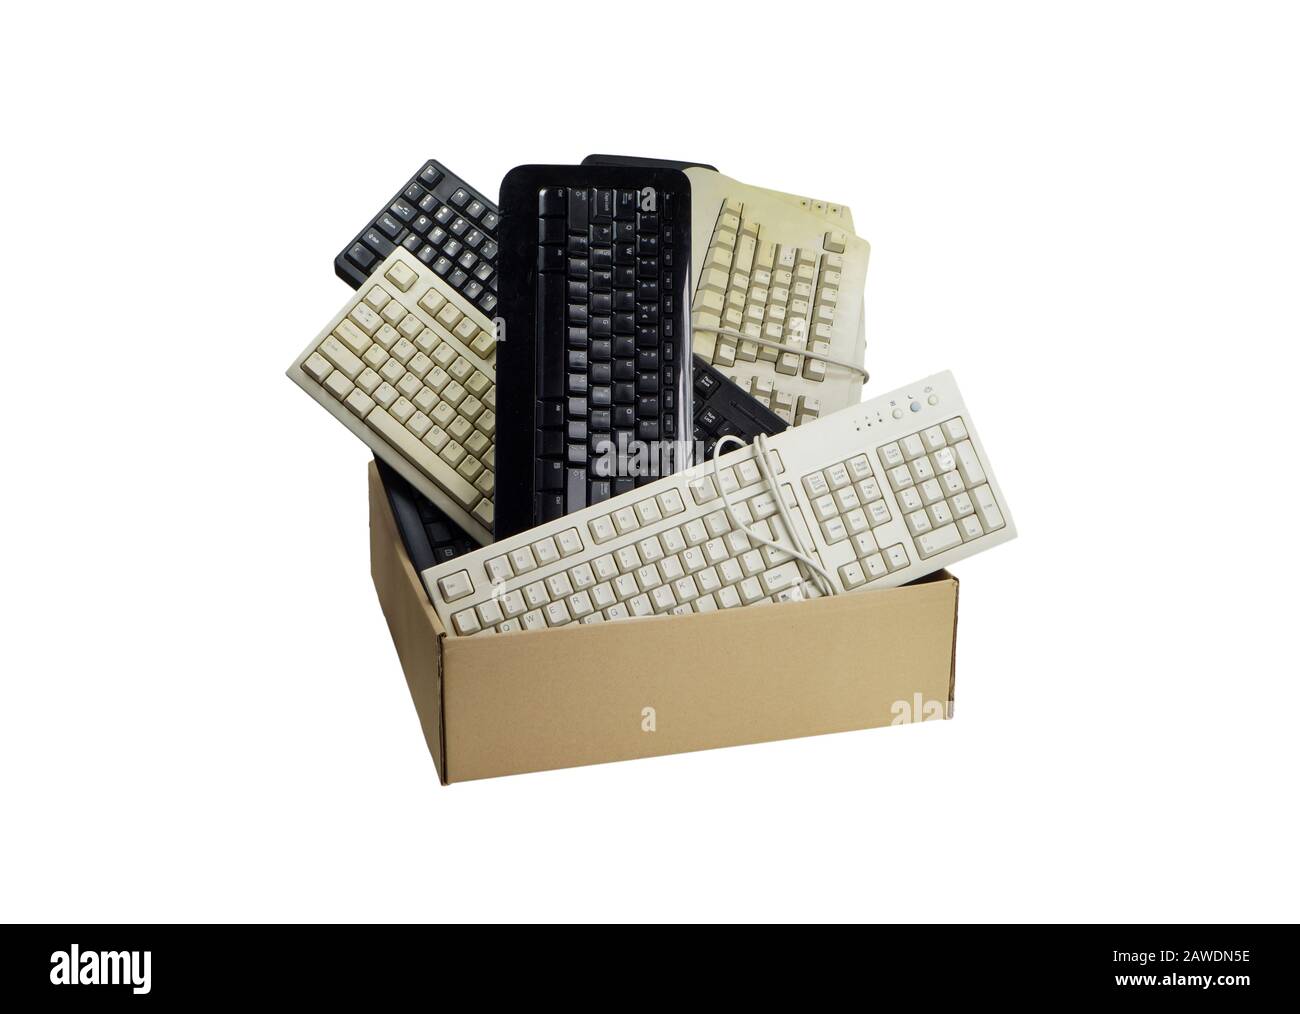 Basura electrónica. Caja de cartón llena de teclados de ordenador usados. Foto de stock